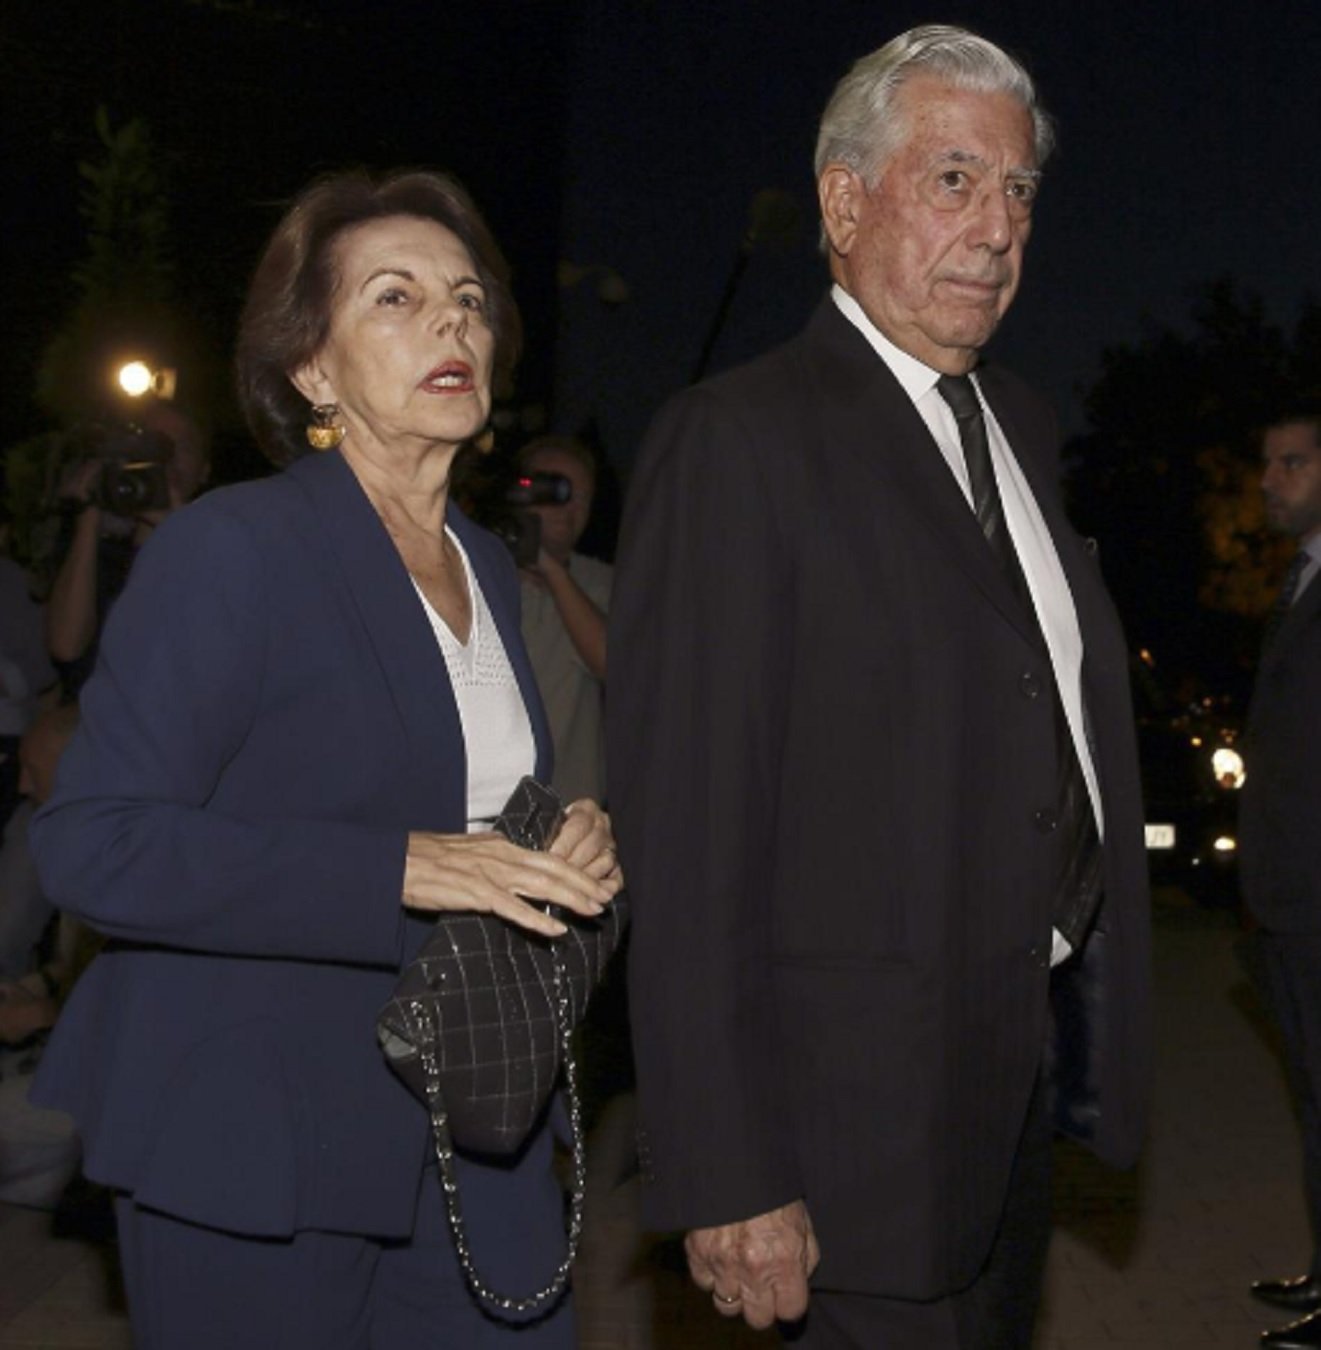 Mario Vargas Llosa vuelve con su ex mujer: juntitos, de cena romántica, "fue muy íntimo"